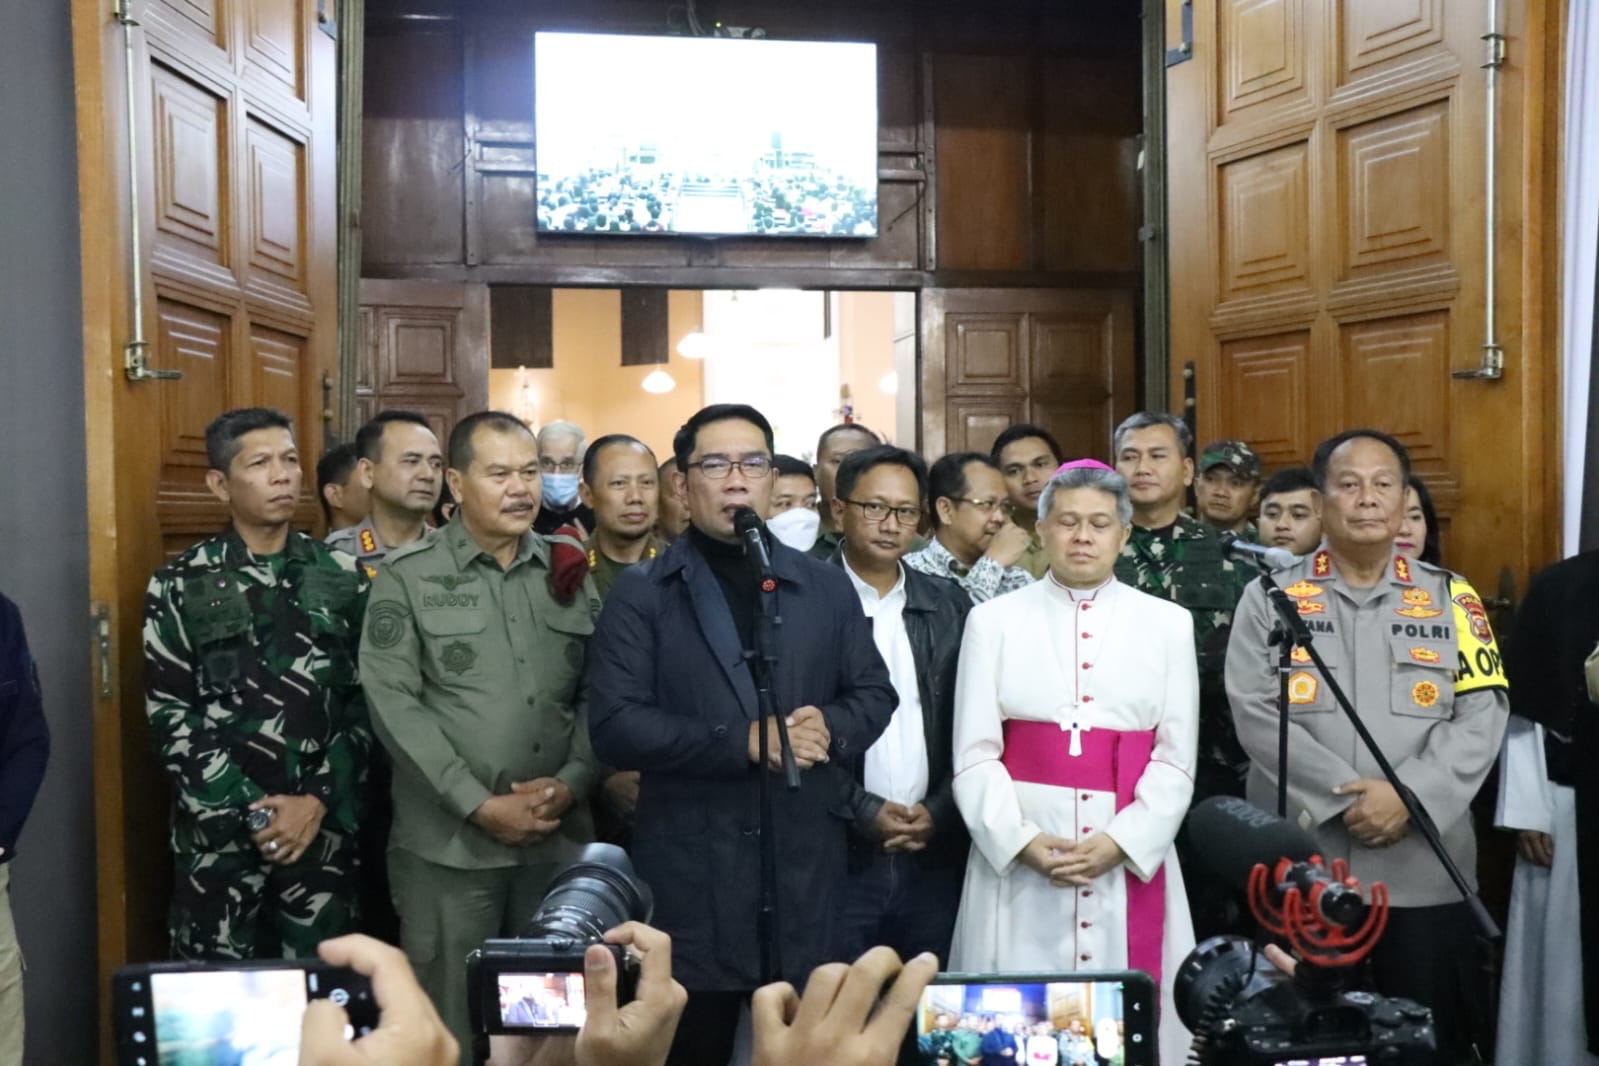 foto: Kapolda Jabar didampingi Gubernur Jabar bersama Forkopimda cek perayaan Natal di Gereja Katedral Bandung